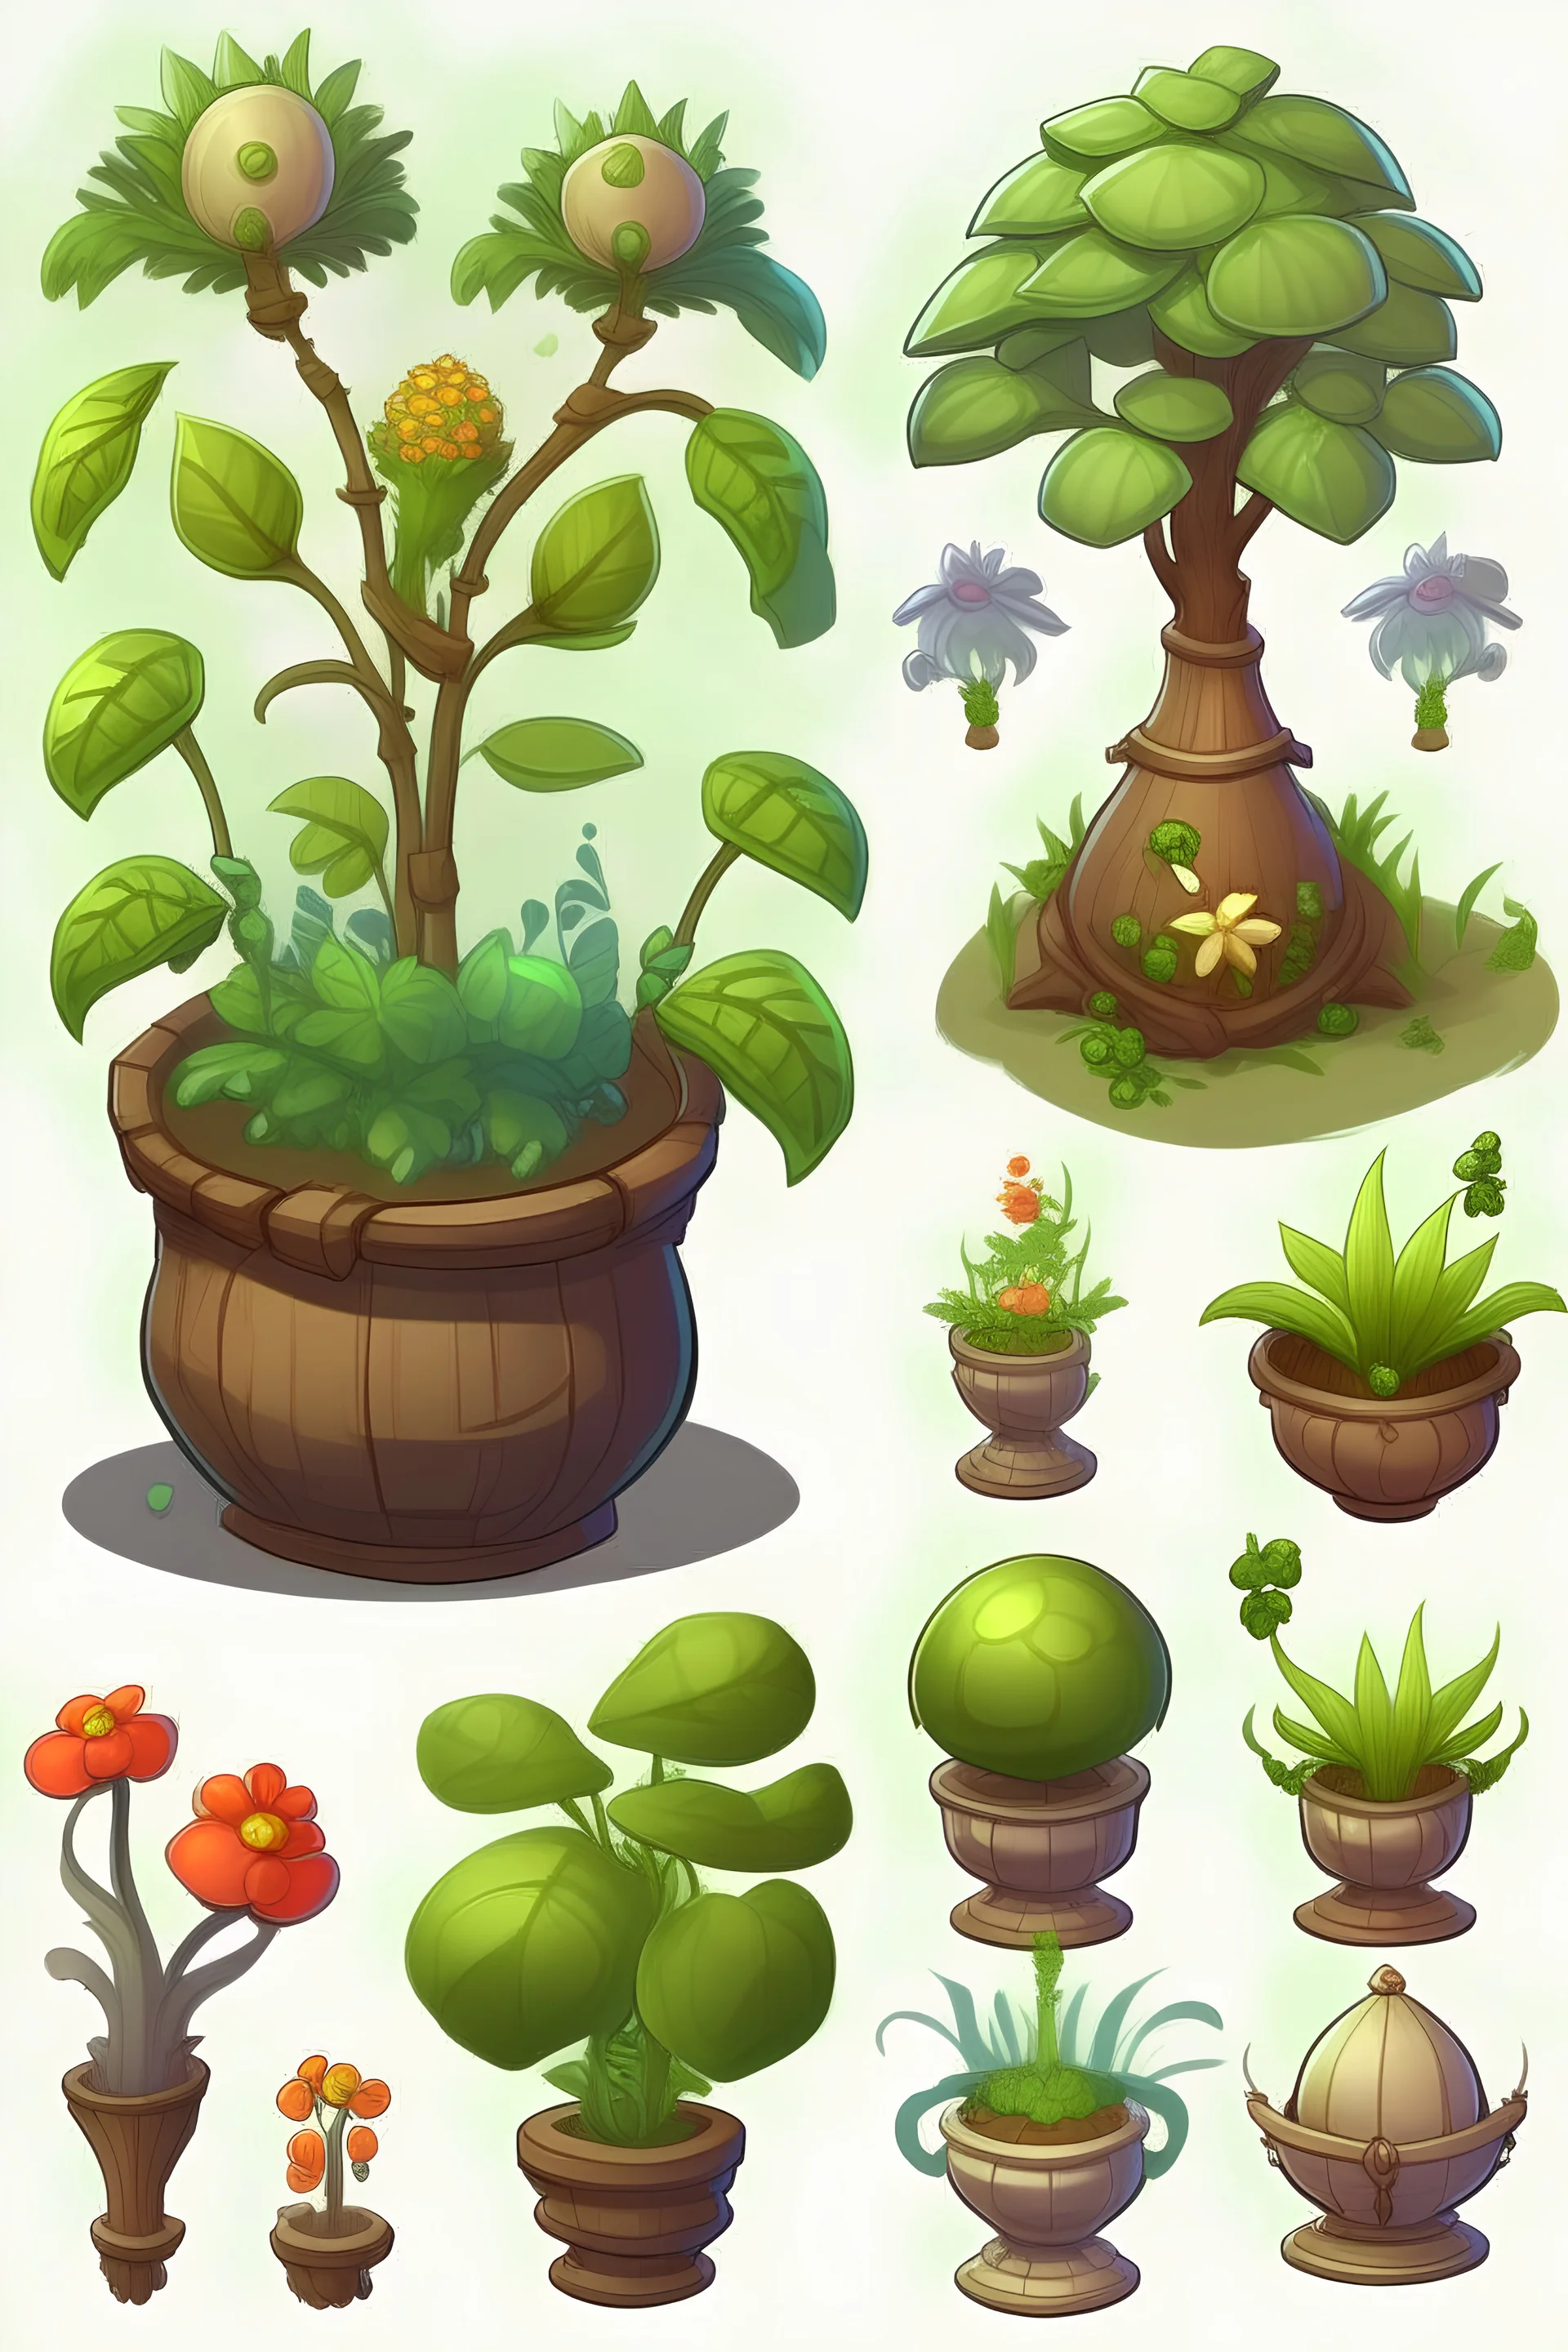 zehirli bitki , oyun tasarımı , yaratıcı ,farklı tarz bitkiler